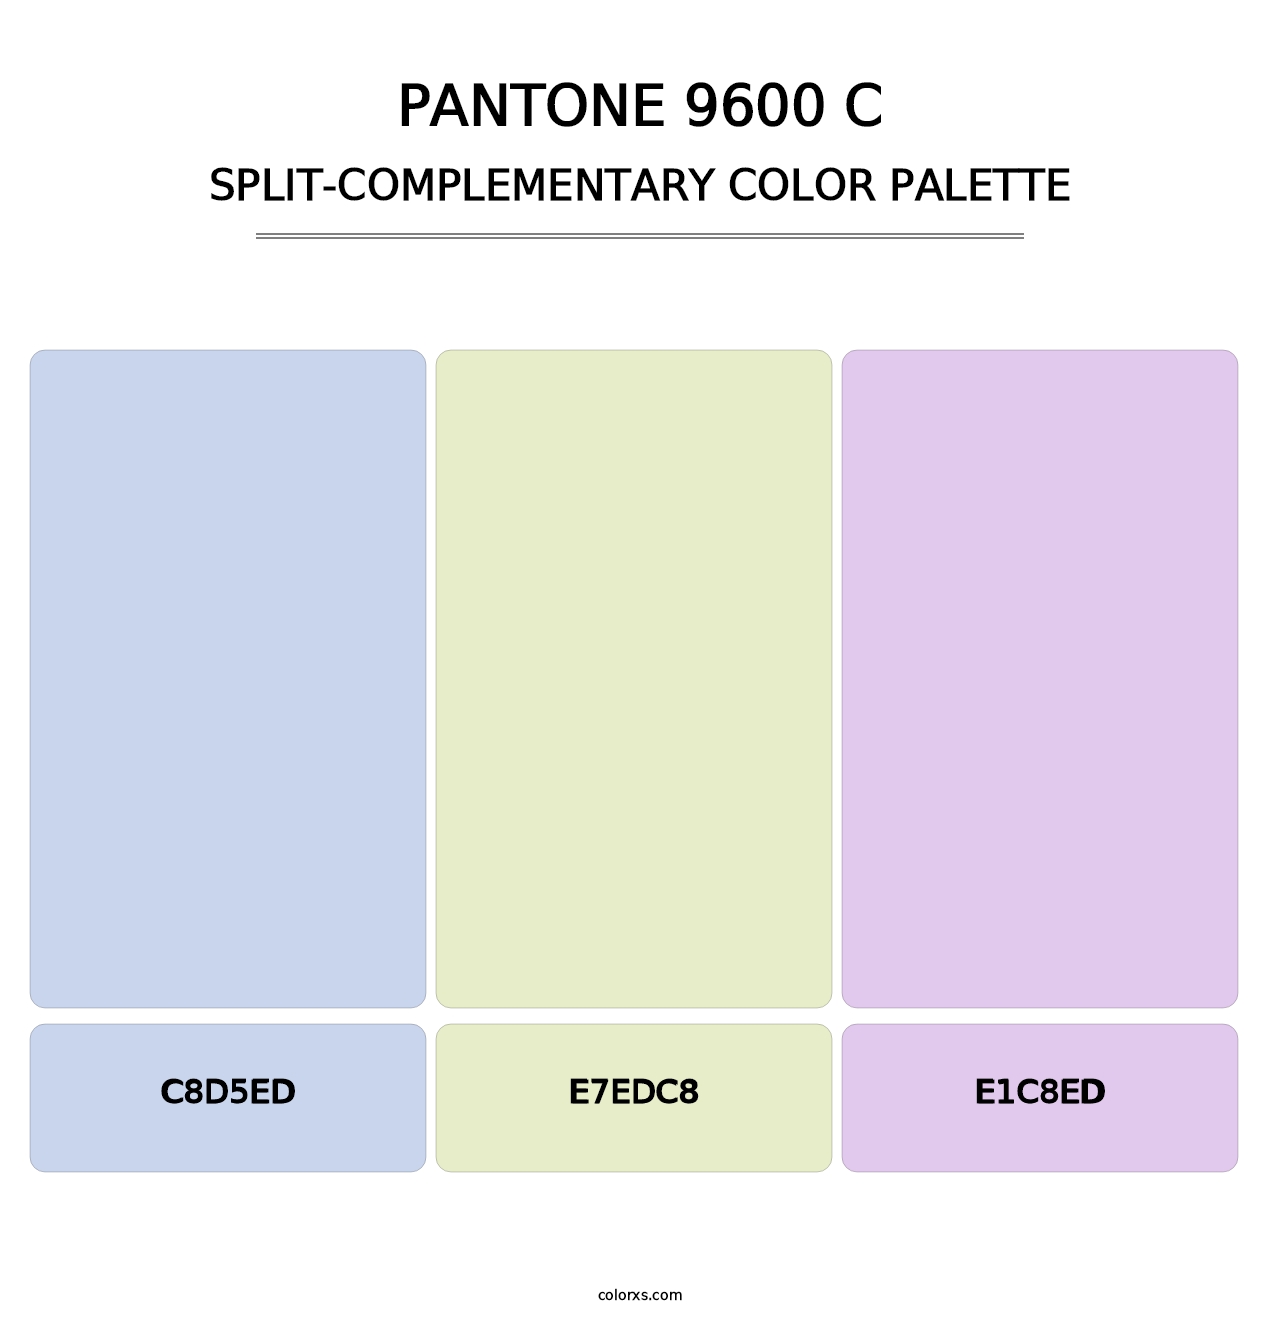 PANTONE 9600 C - Split-Complementary Color Palette